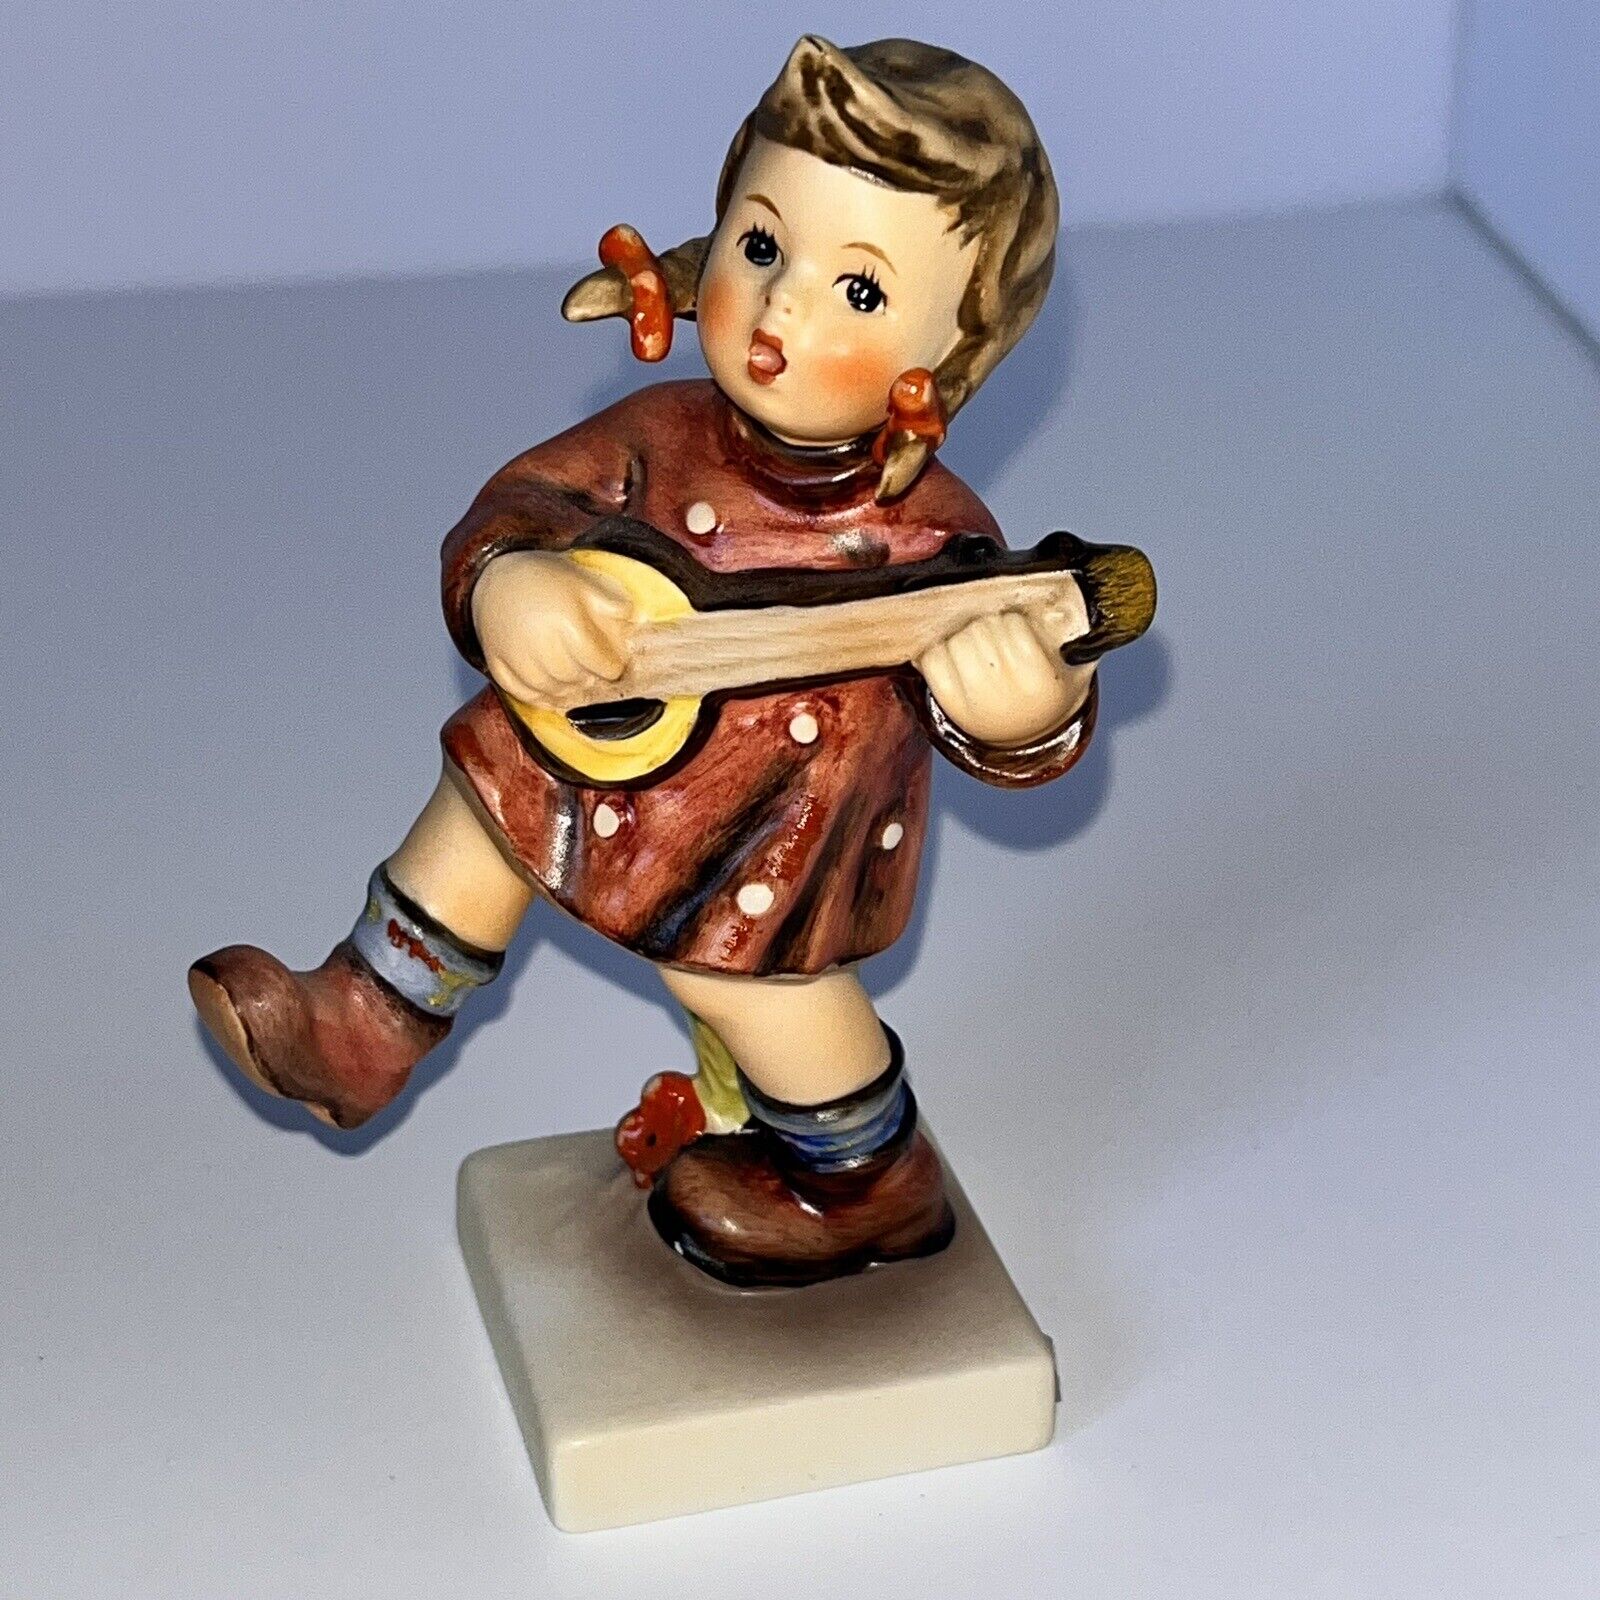 Goebel Hummel Figurine Girl Play Bango Happiness #86 Signed 4.5”x2.5”x1.75”